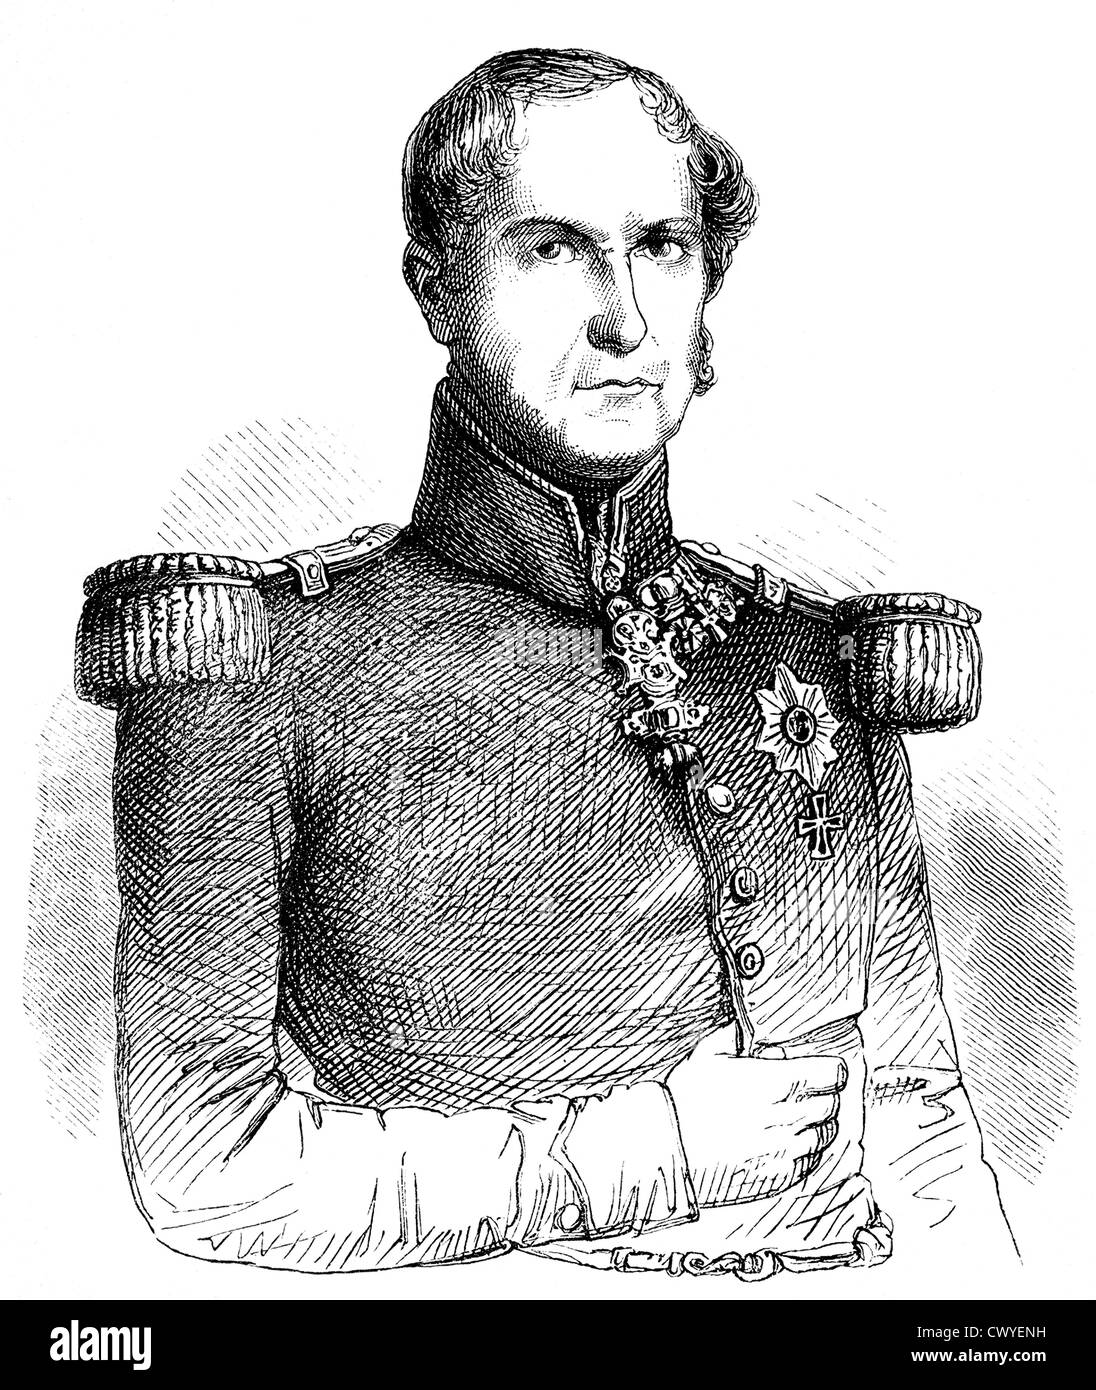 Leopold I Georg Christian Friedrich de Belgique, 1790 - 1865, le prince de Saxe-Cobourg-Saalfeld, et le premier roi des Belges Banque D'Images